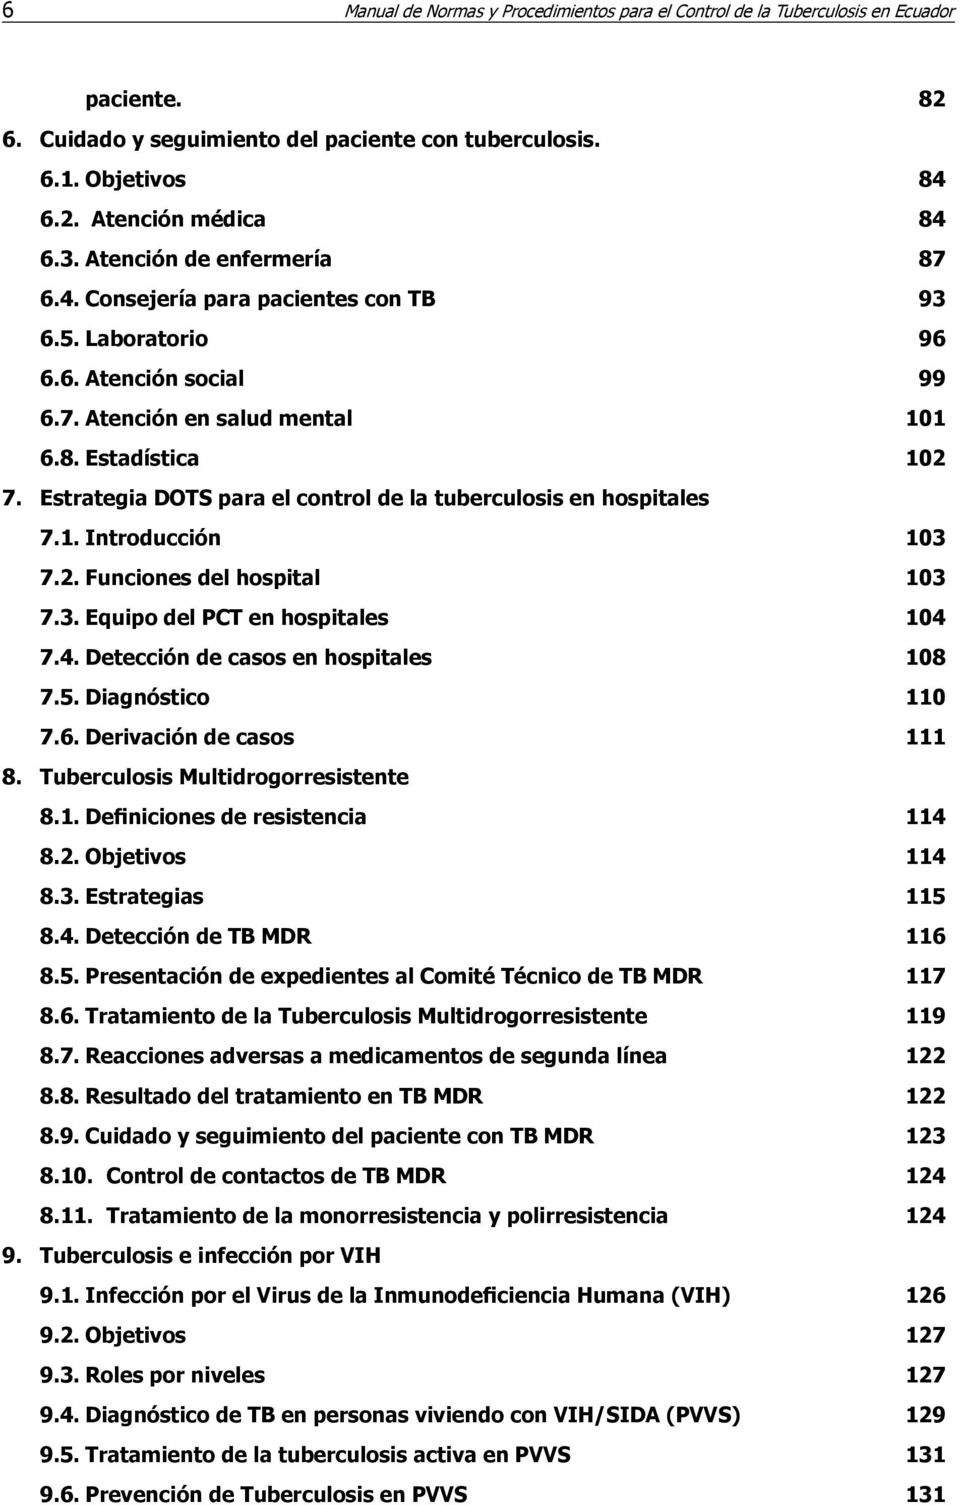 Estrategia DOTS para el control de la tuberculosis en hospitales 7.1. Introducción 103 7.2. Funciones del hospital 103 7.3. Equipo del PCT en hospitales 104 7.4. Detección de casos en hospitales 108 7.